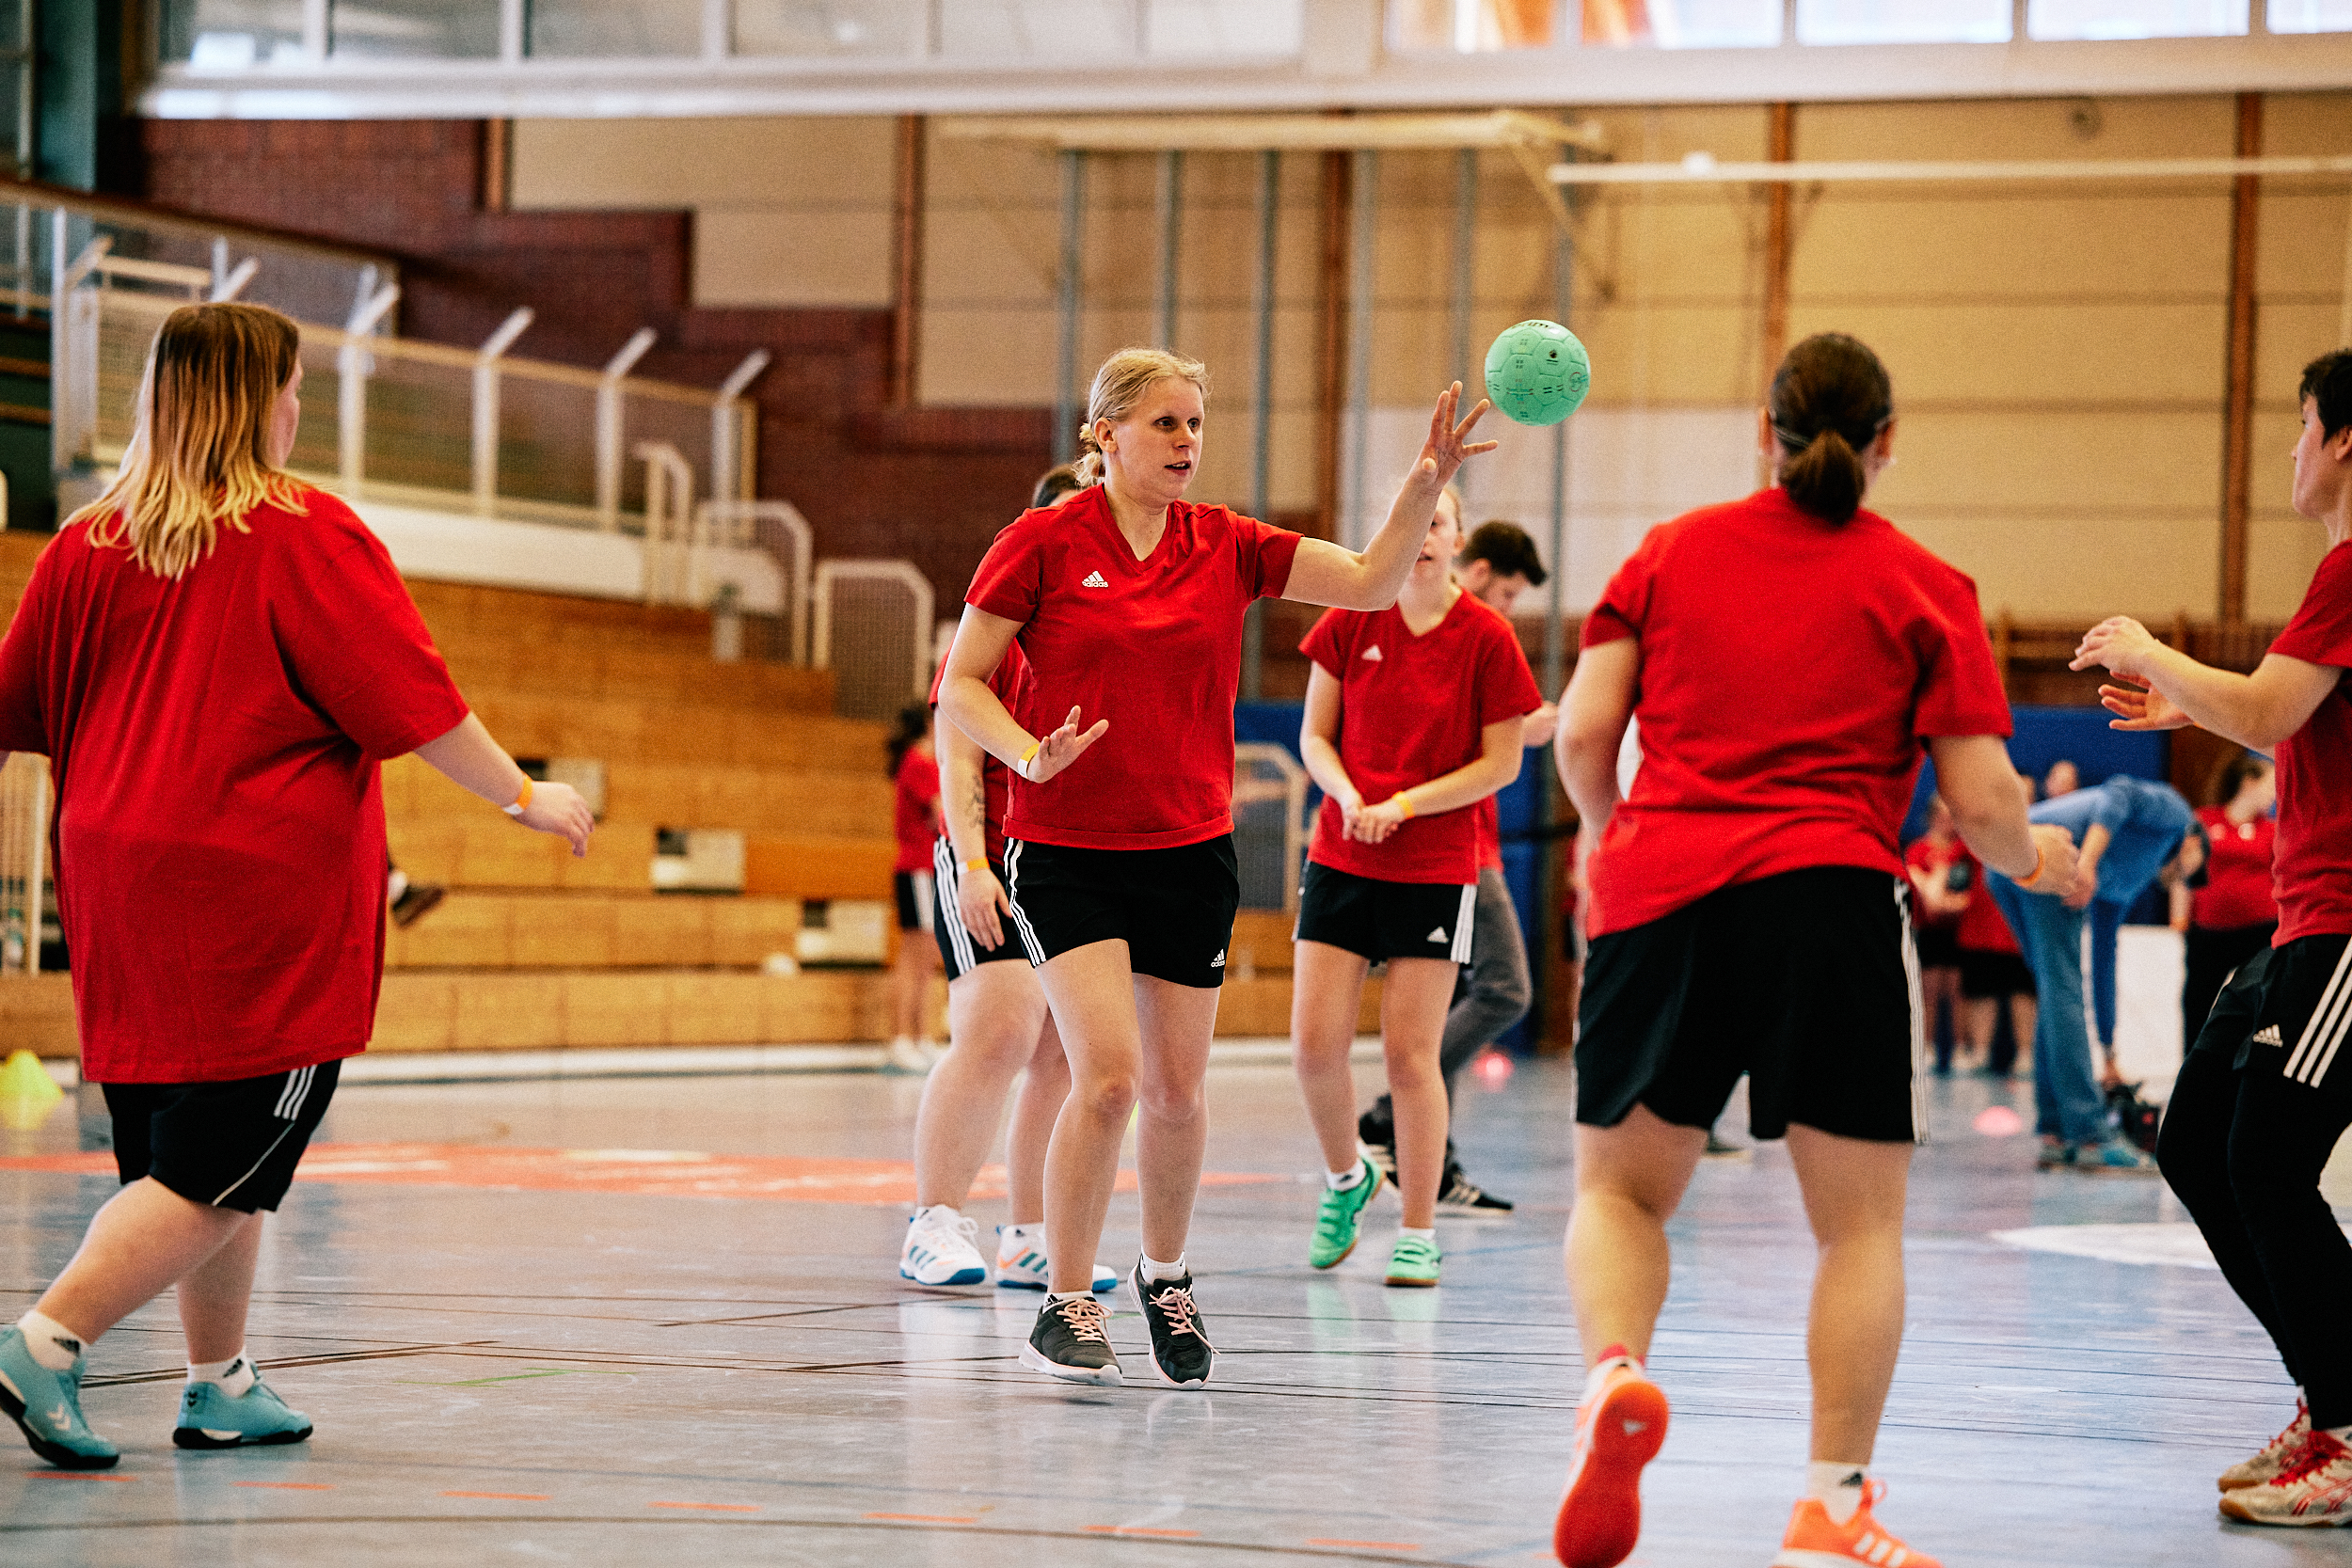 Fünf Handballerinnen auf einem Spielfeld werfen sich den Ball zu.